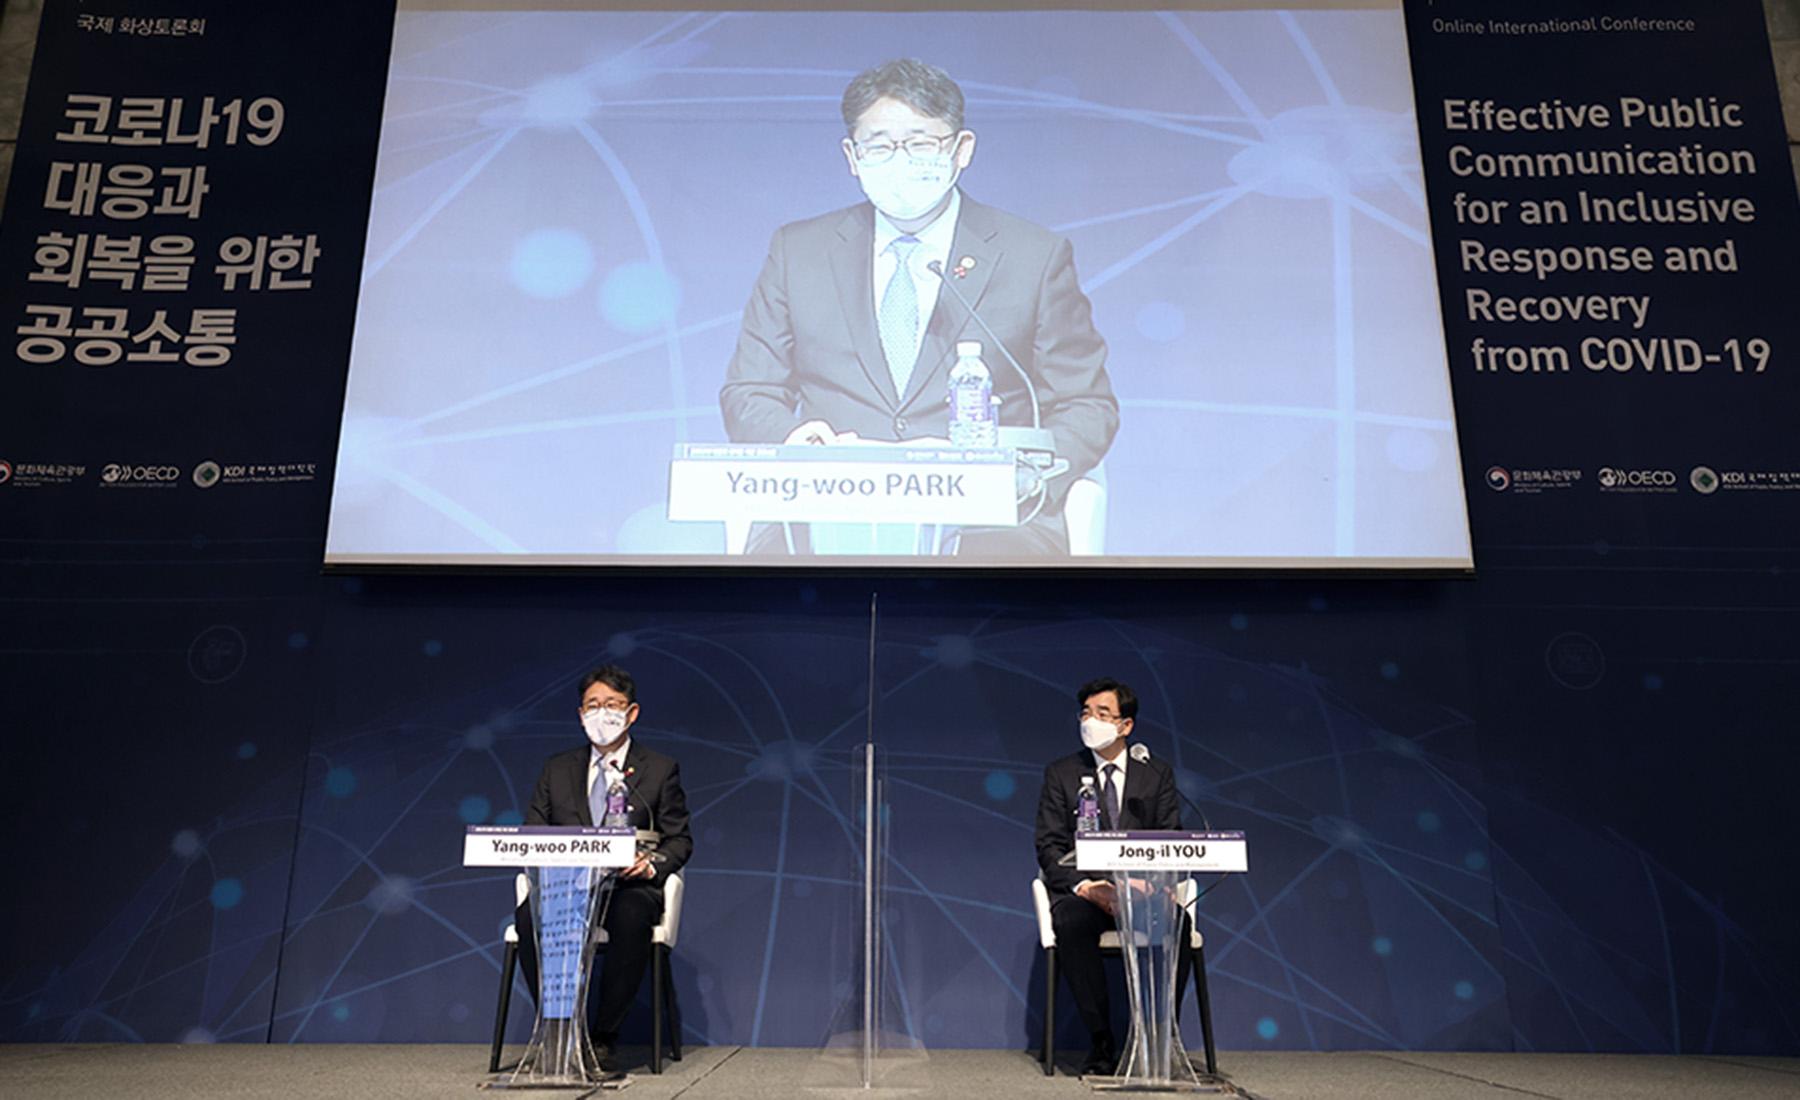 ‘코로나19 대응과 회복을 위한 공공소통’ 국제 화상토론회 개최(2020. 12. 09.)